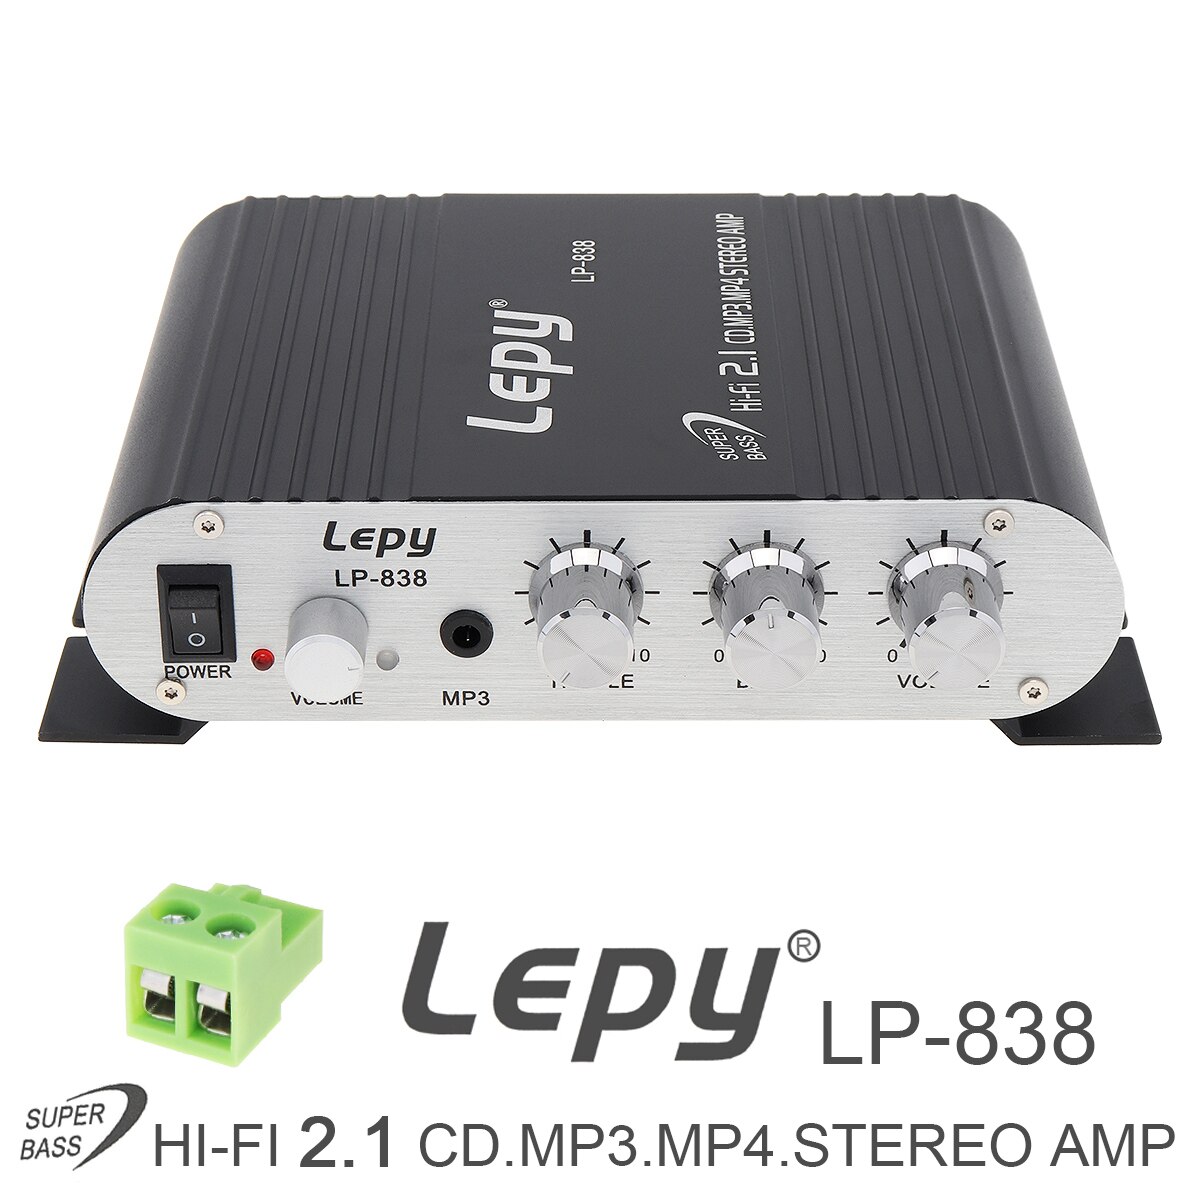 Lepy Lp-838 Auto Versterker 12V Hi-Fi 2.1 Versterker Booster Radio Cd MP3 MP4 Stereo Amp Bass Speaker speler Voor Car Home